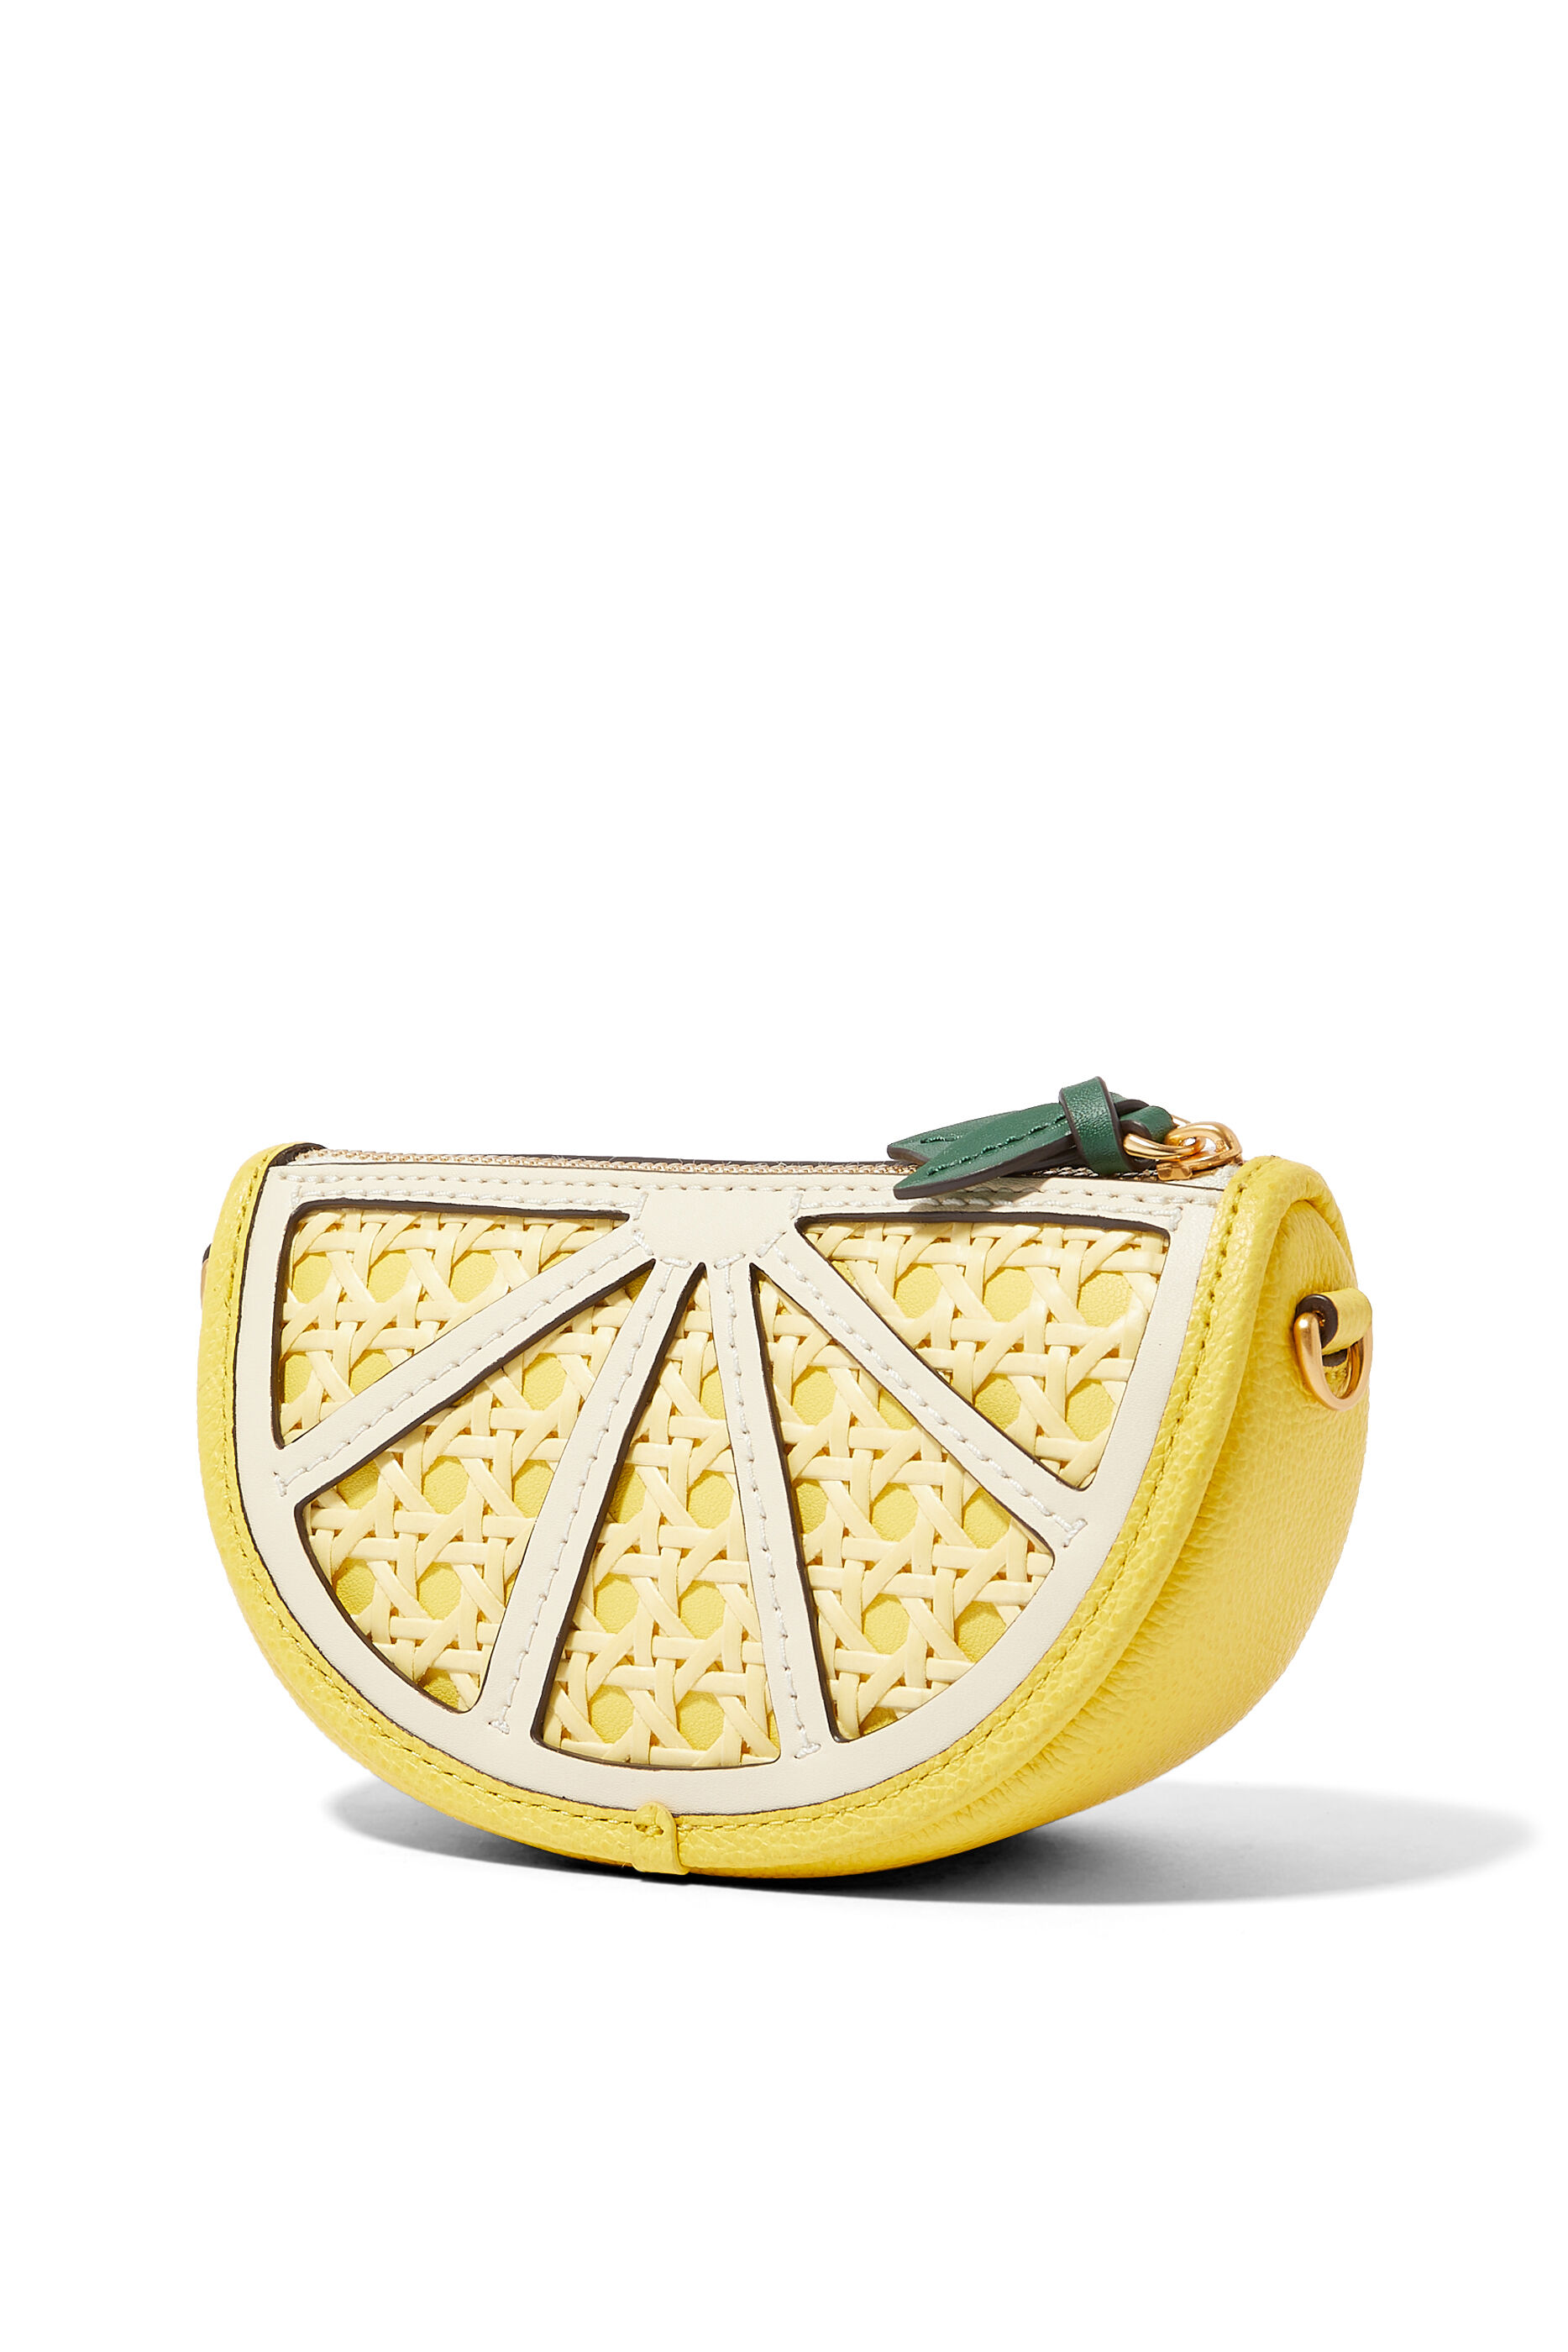 Kate Spade New York Lemon Zest Jewelry Holder Case Italy | Ubuy